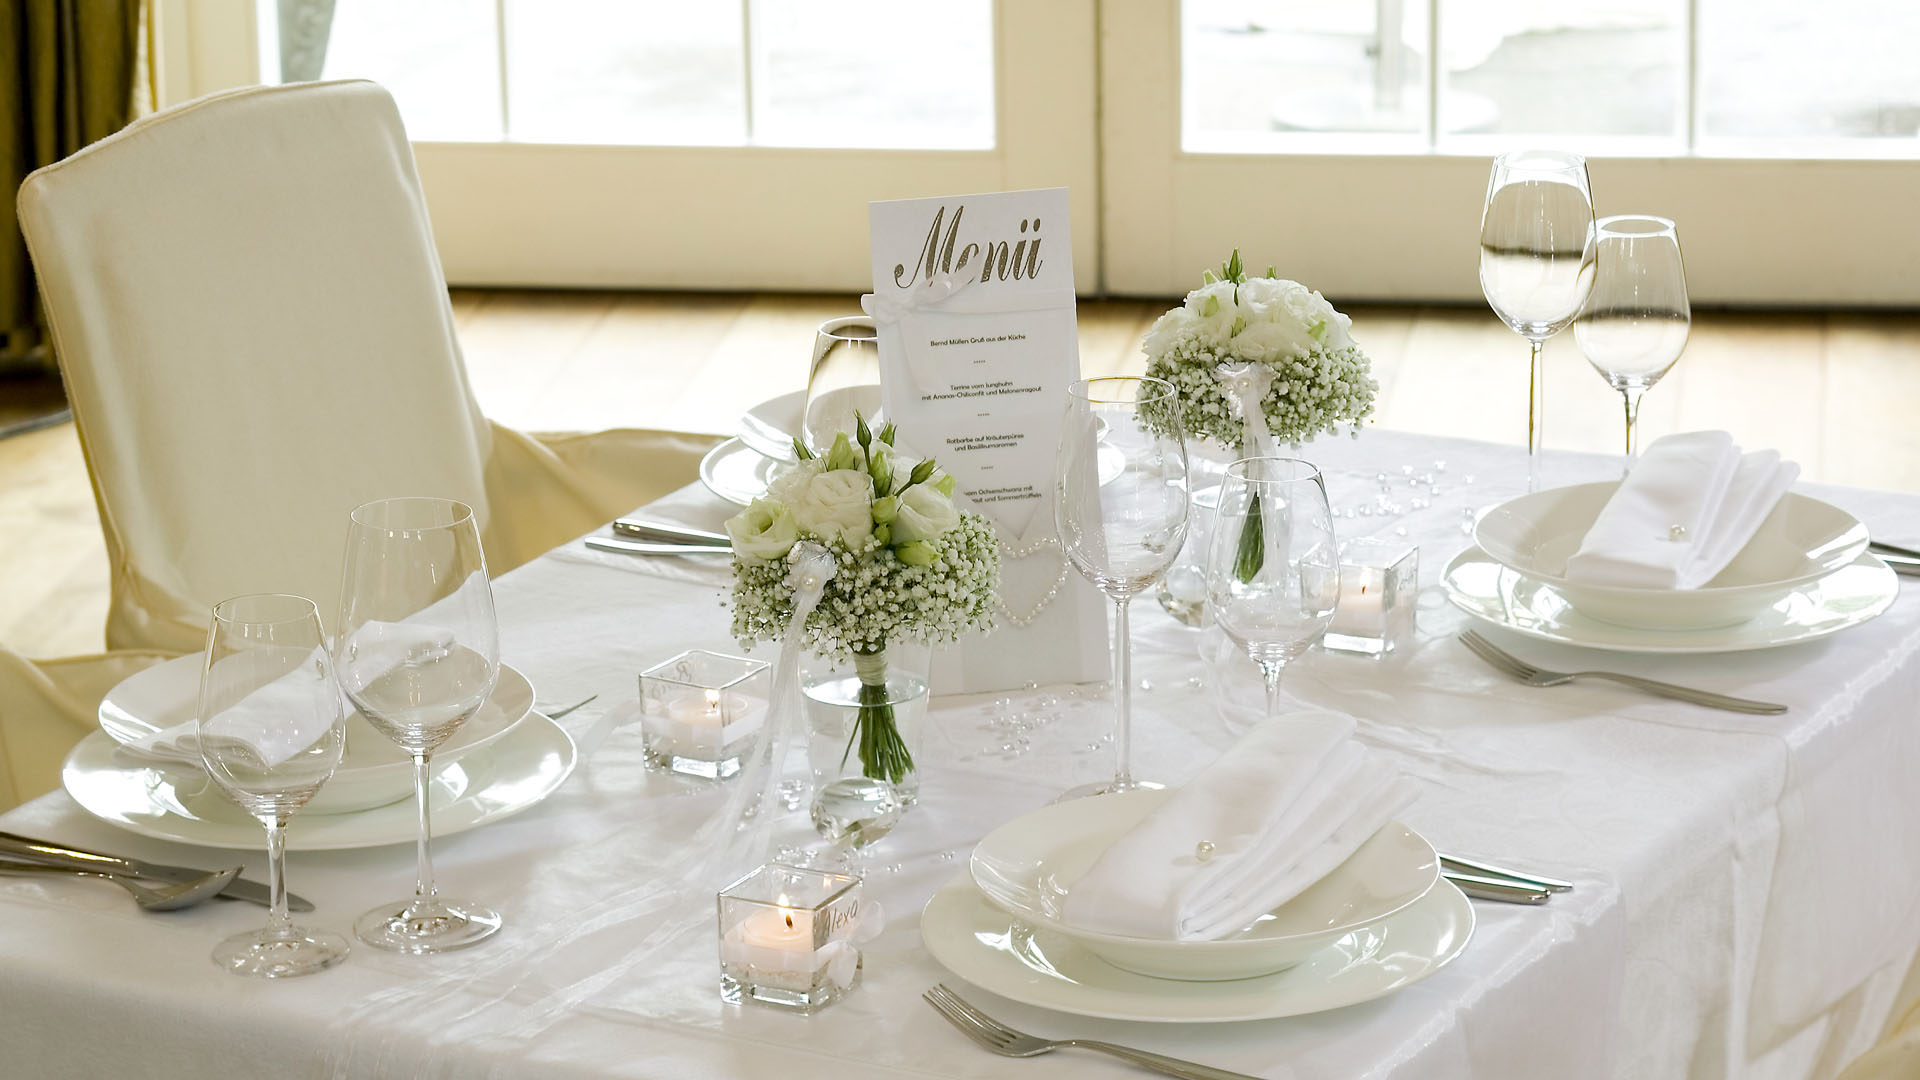 Ideen für Hochzeiten: Ein Traum in Weiß | Menükarte ganz in Weiß mit einem Herz aus Perlen und großem gestempelten Schriftzug in Silber